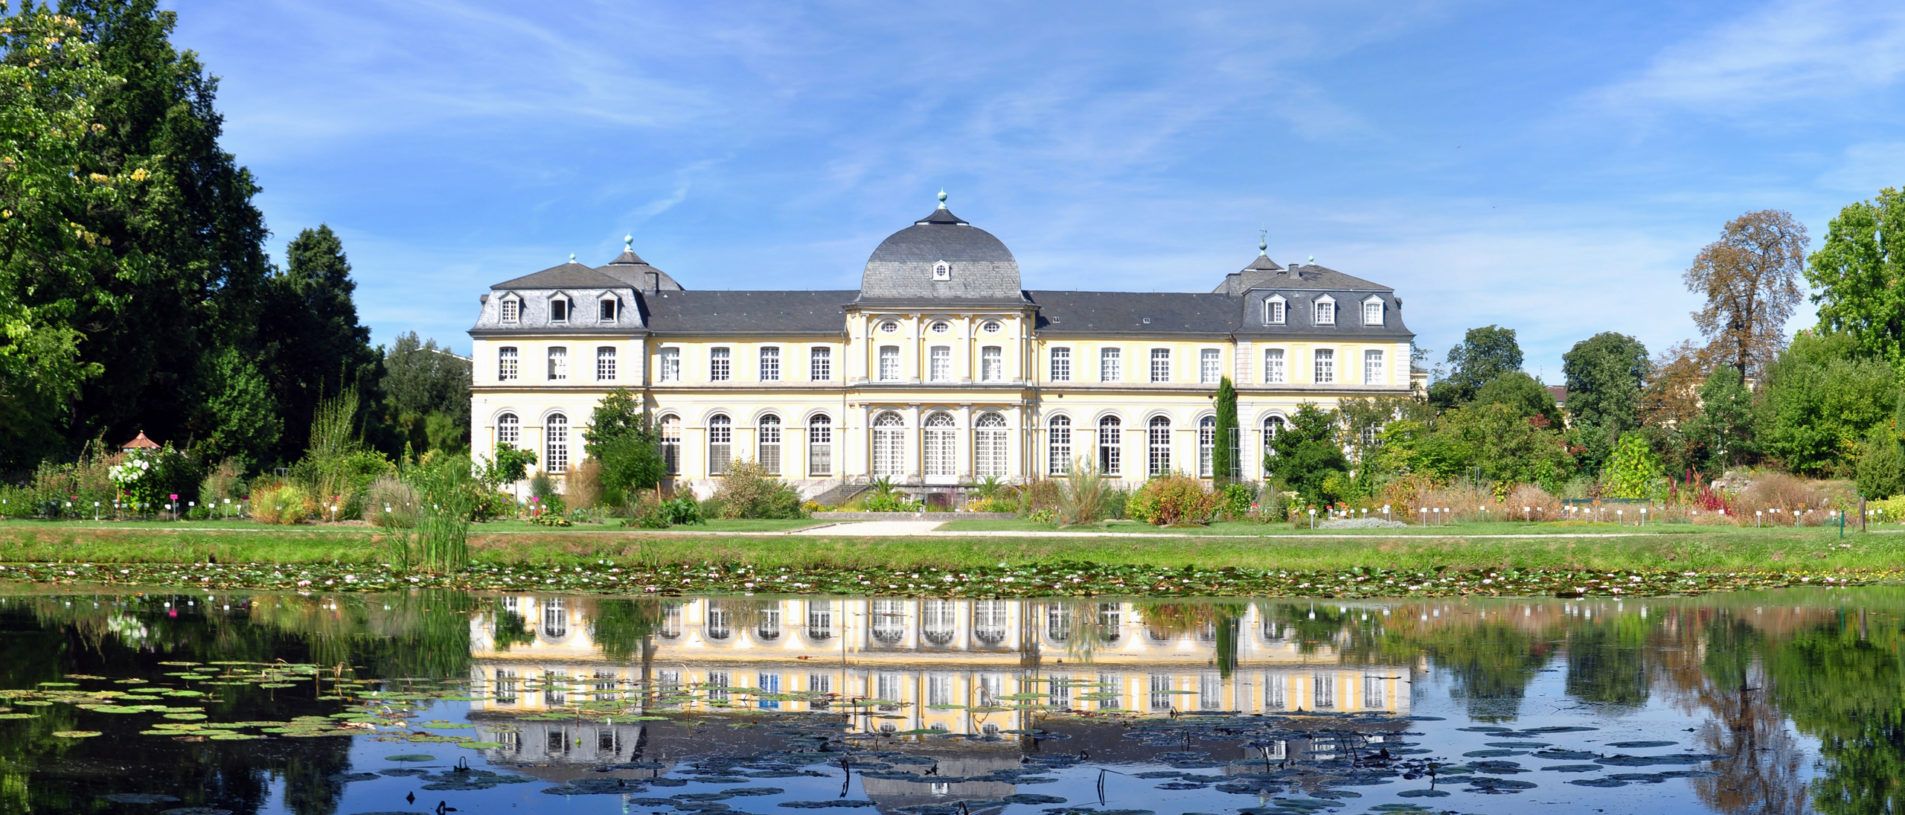 Schloss in Bonn